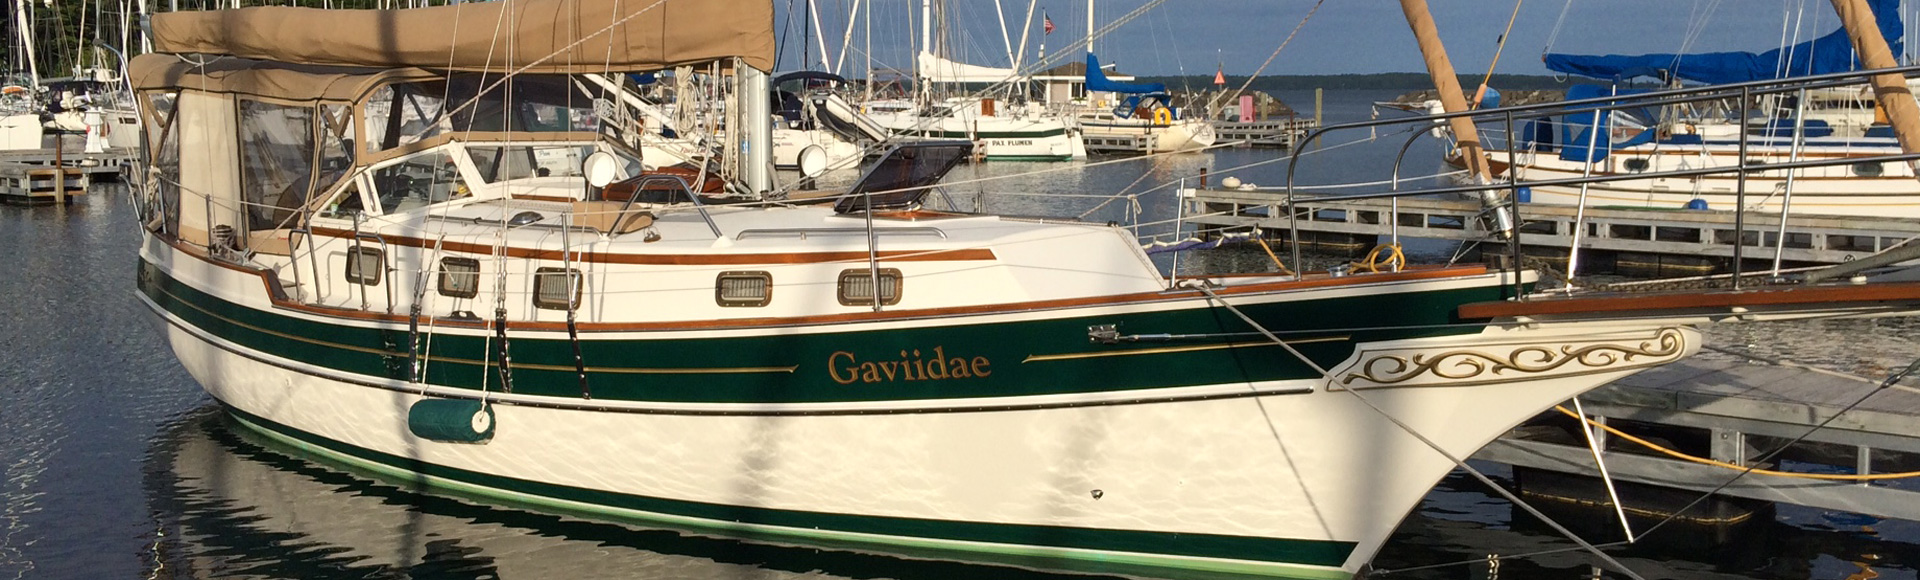 Gaviidae is in the Water